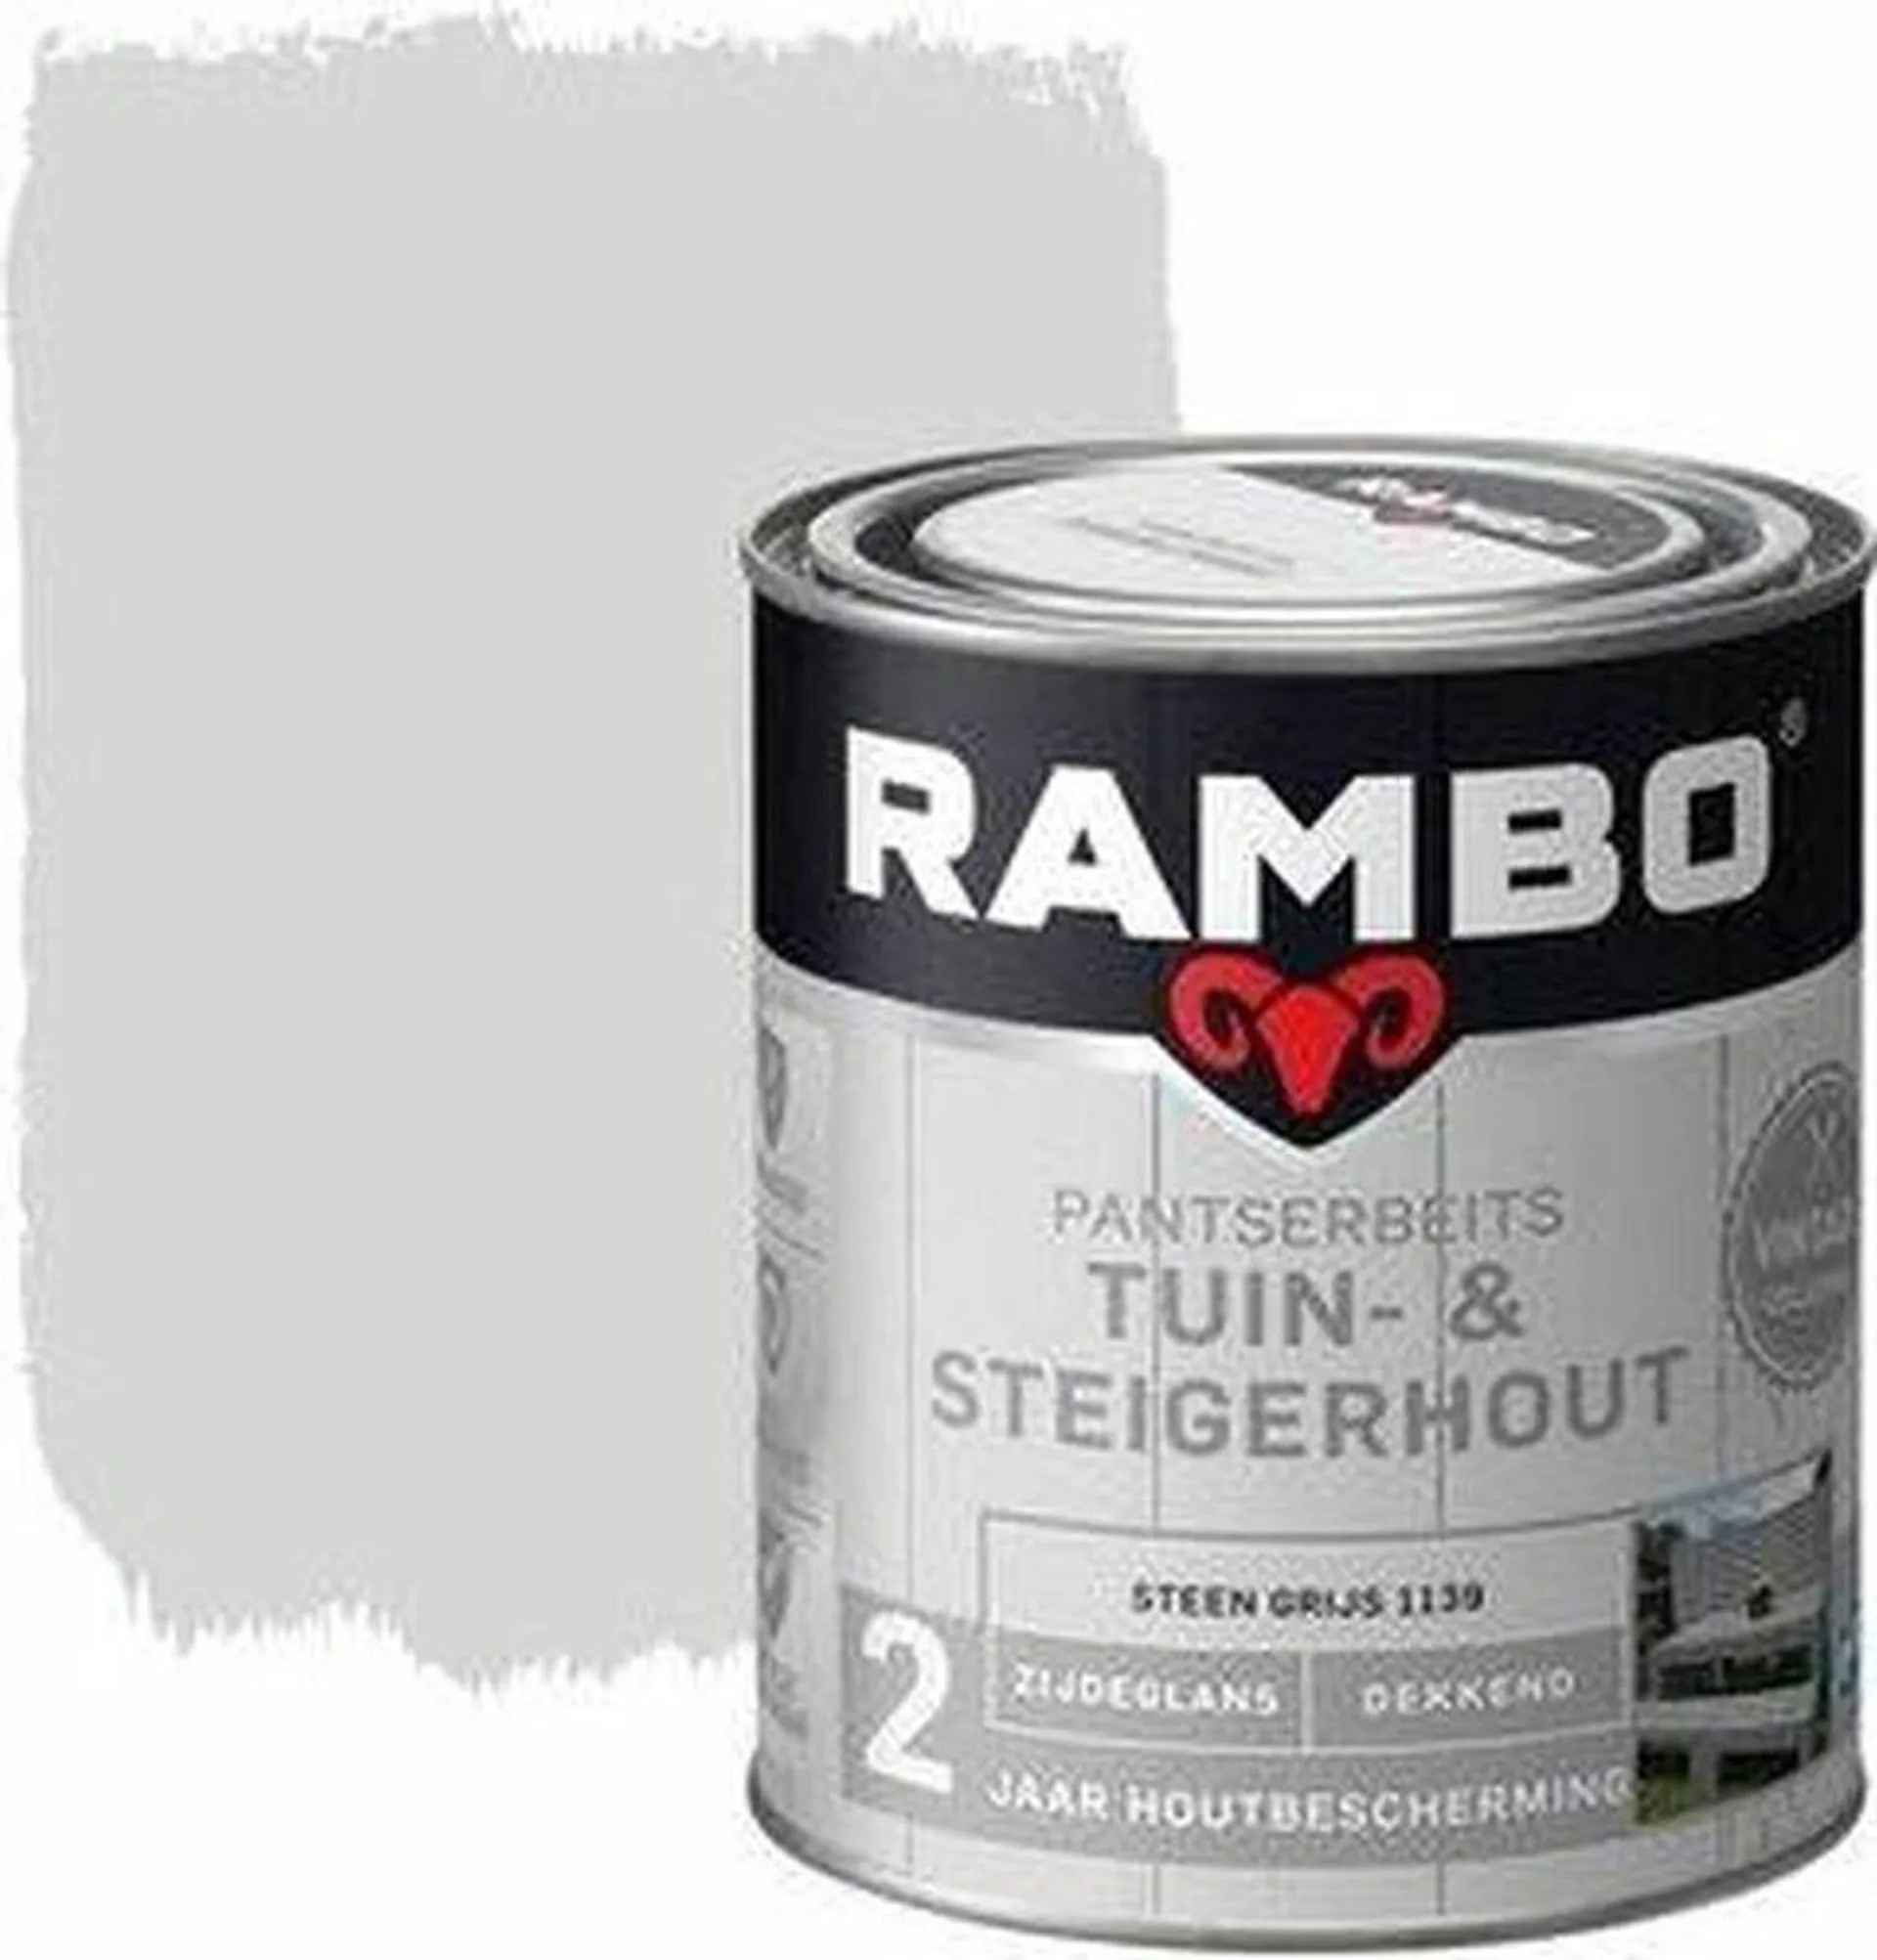 Rambo Pantserbeits Tuin- & Steigerhout Steen Grijs 1139